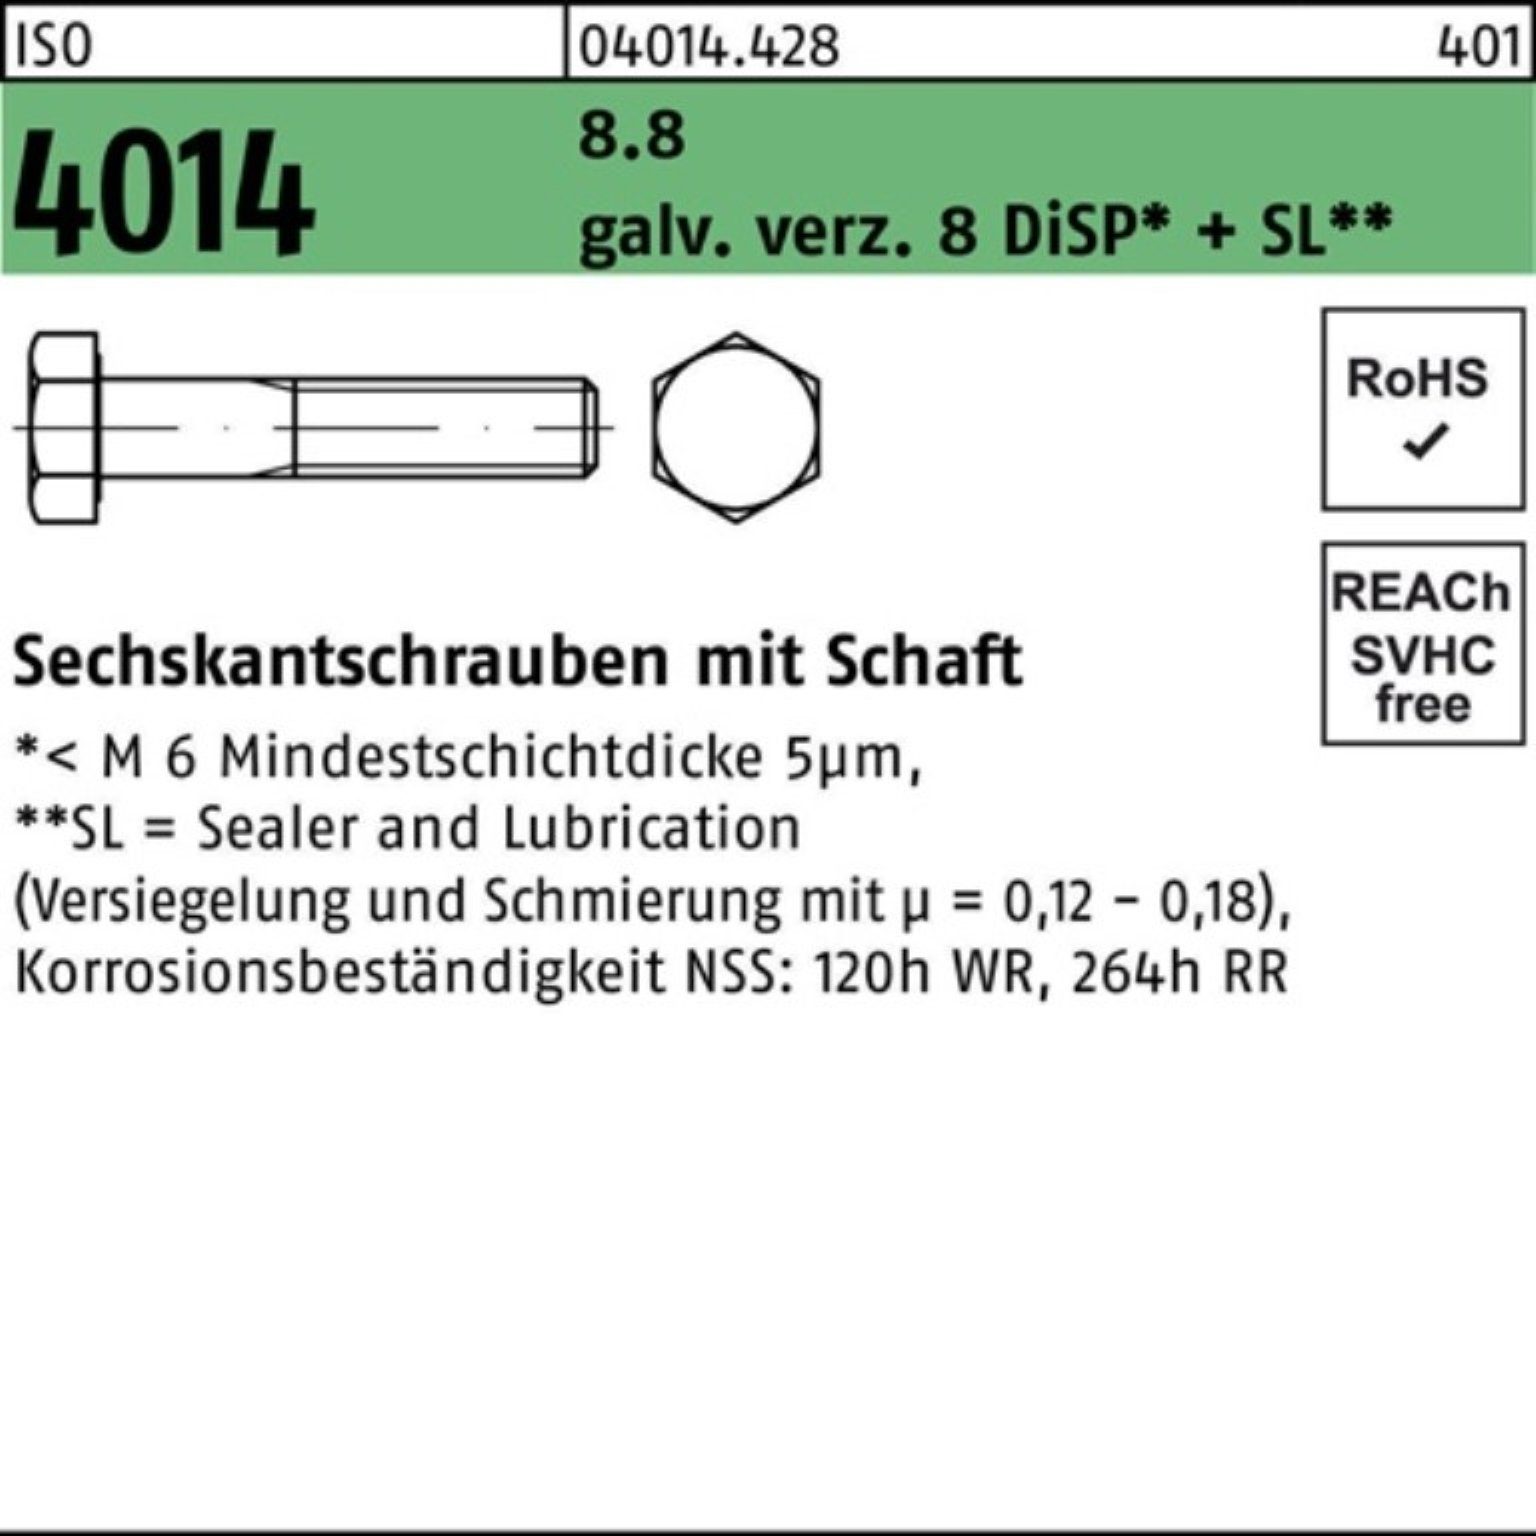 Bufab Sechskantschraube 100er Pack Sechskantschraube ISO 4014 Schaft M20x110 8.8 galv.verz. 8